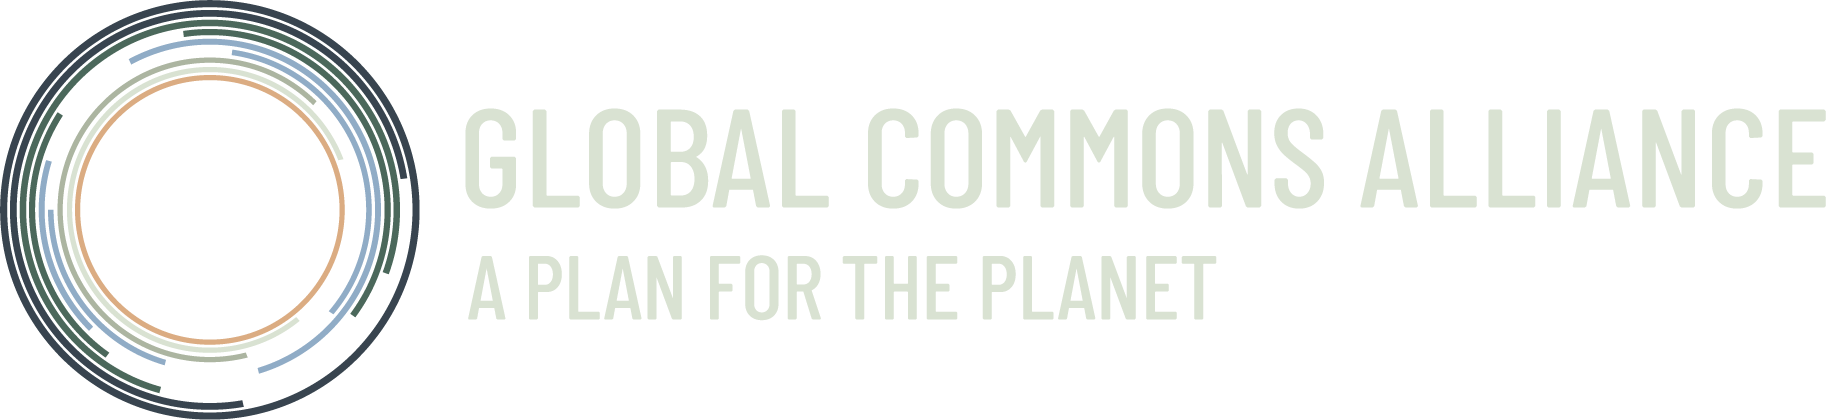 Global Commons Alliance logo